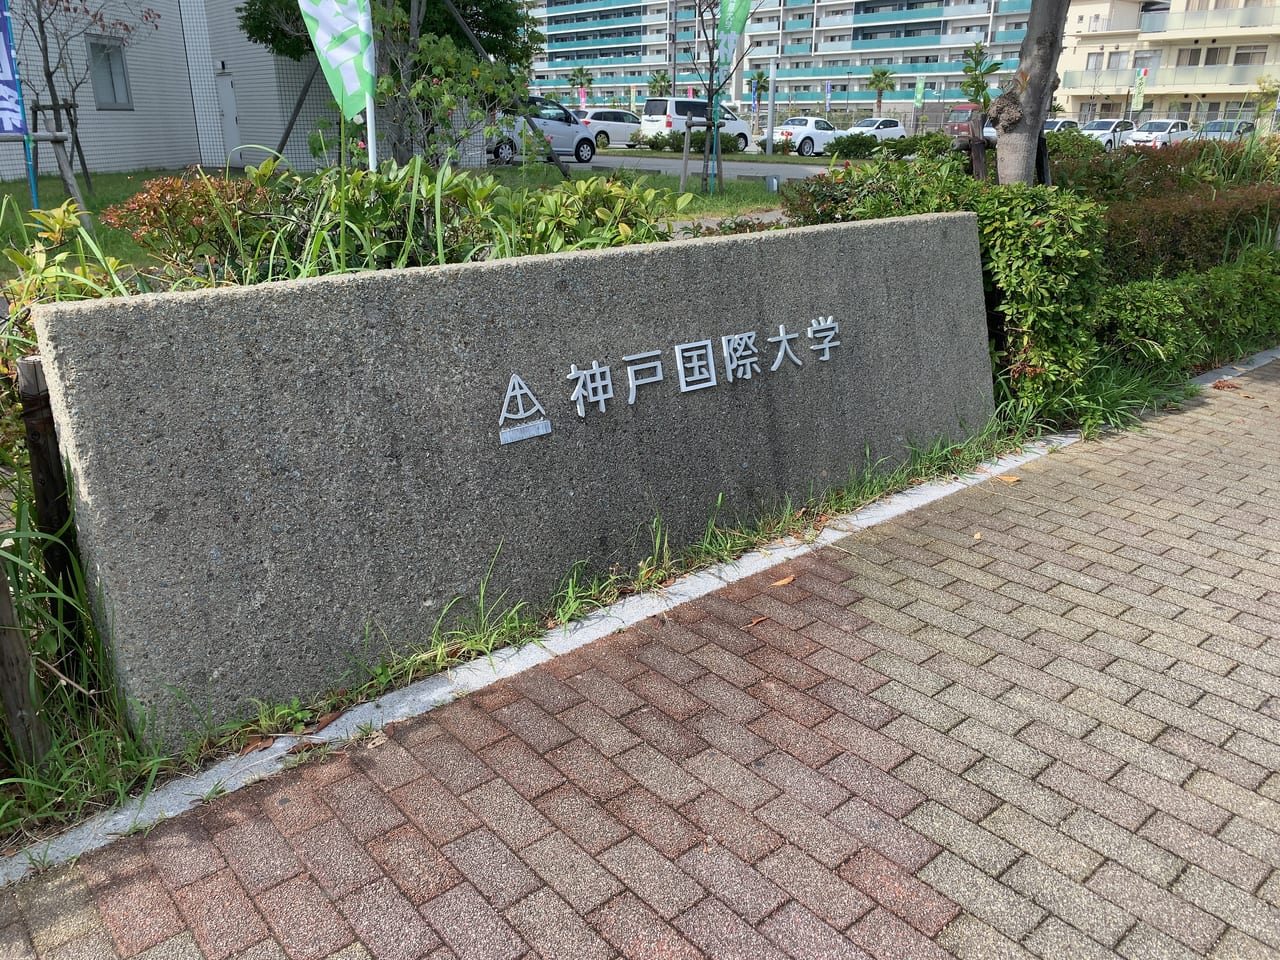 神戸国際大学